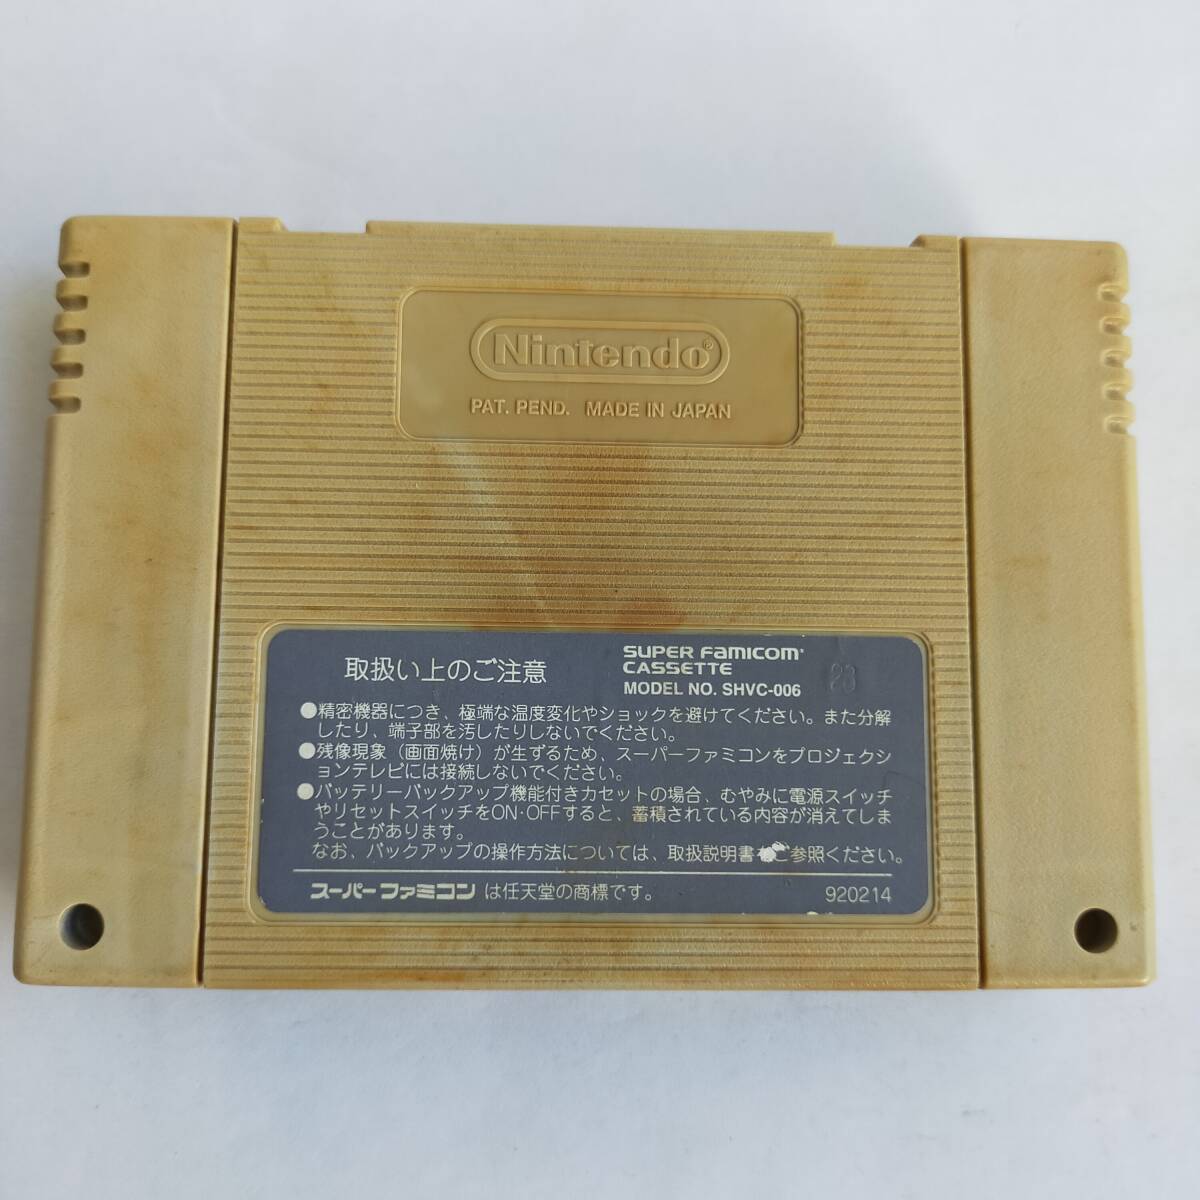  Mario краска ( soft одиночный товар ) Super Famicom рабочее состояние подтверждено * терминал чистка settled [SFC6622_2307068]